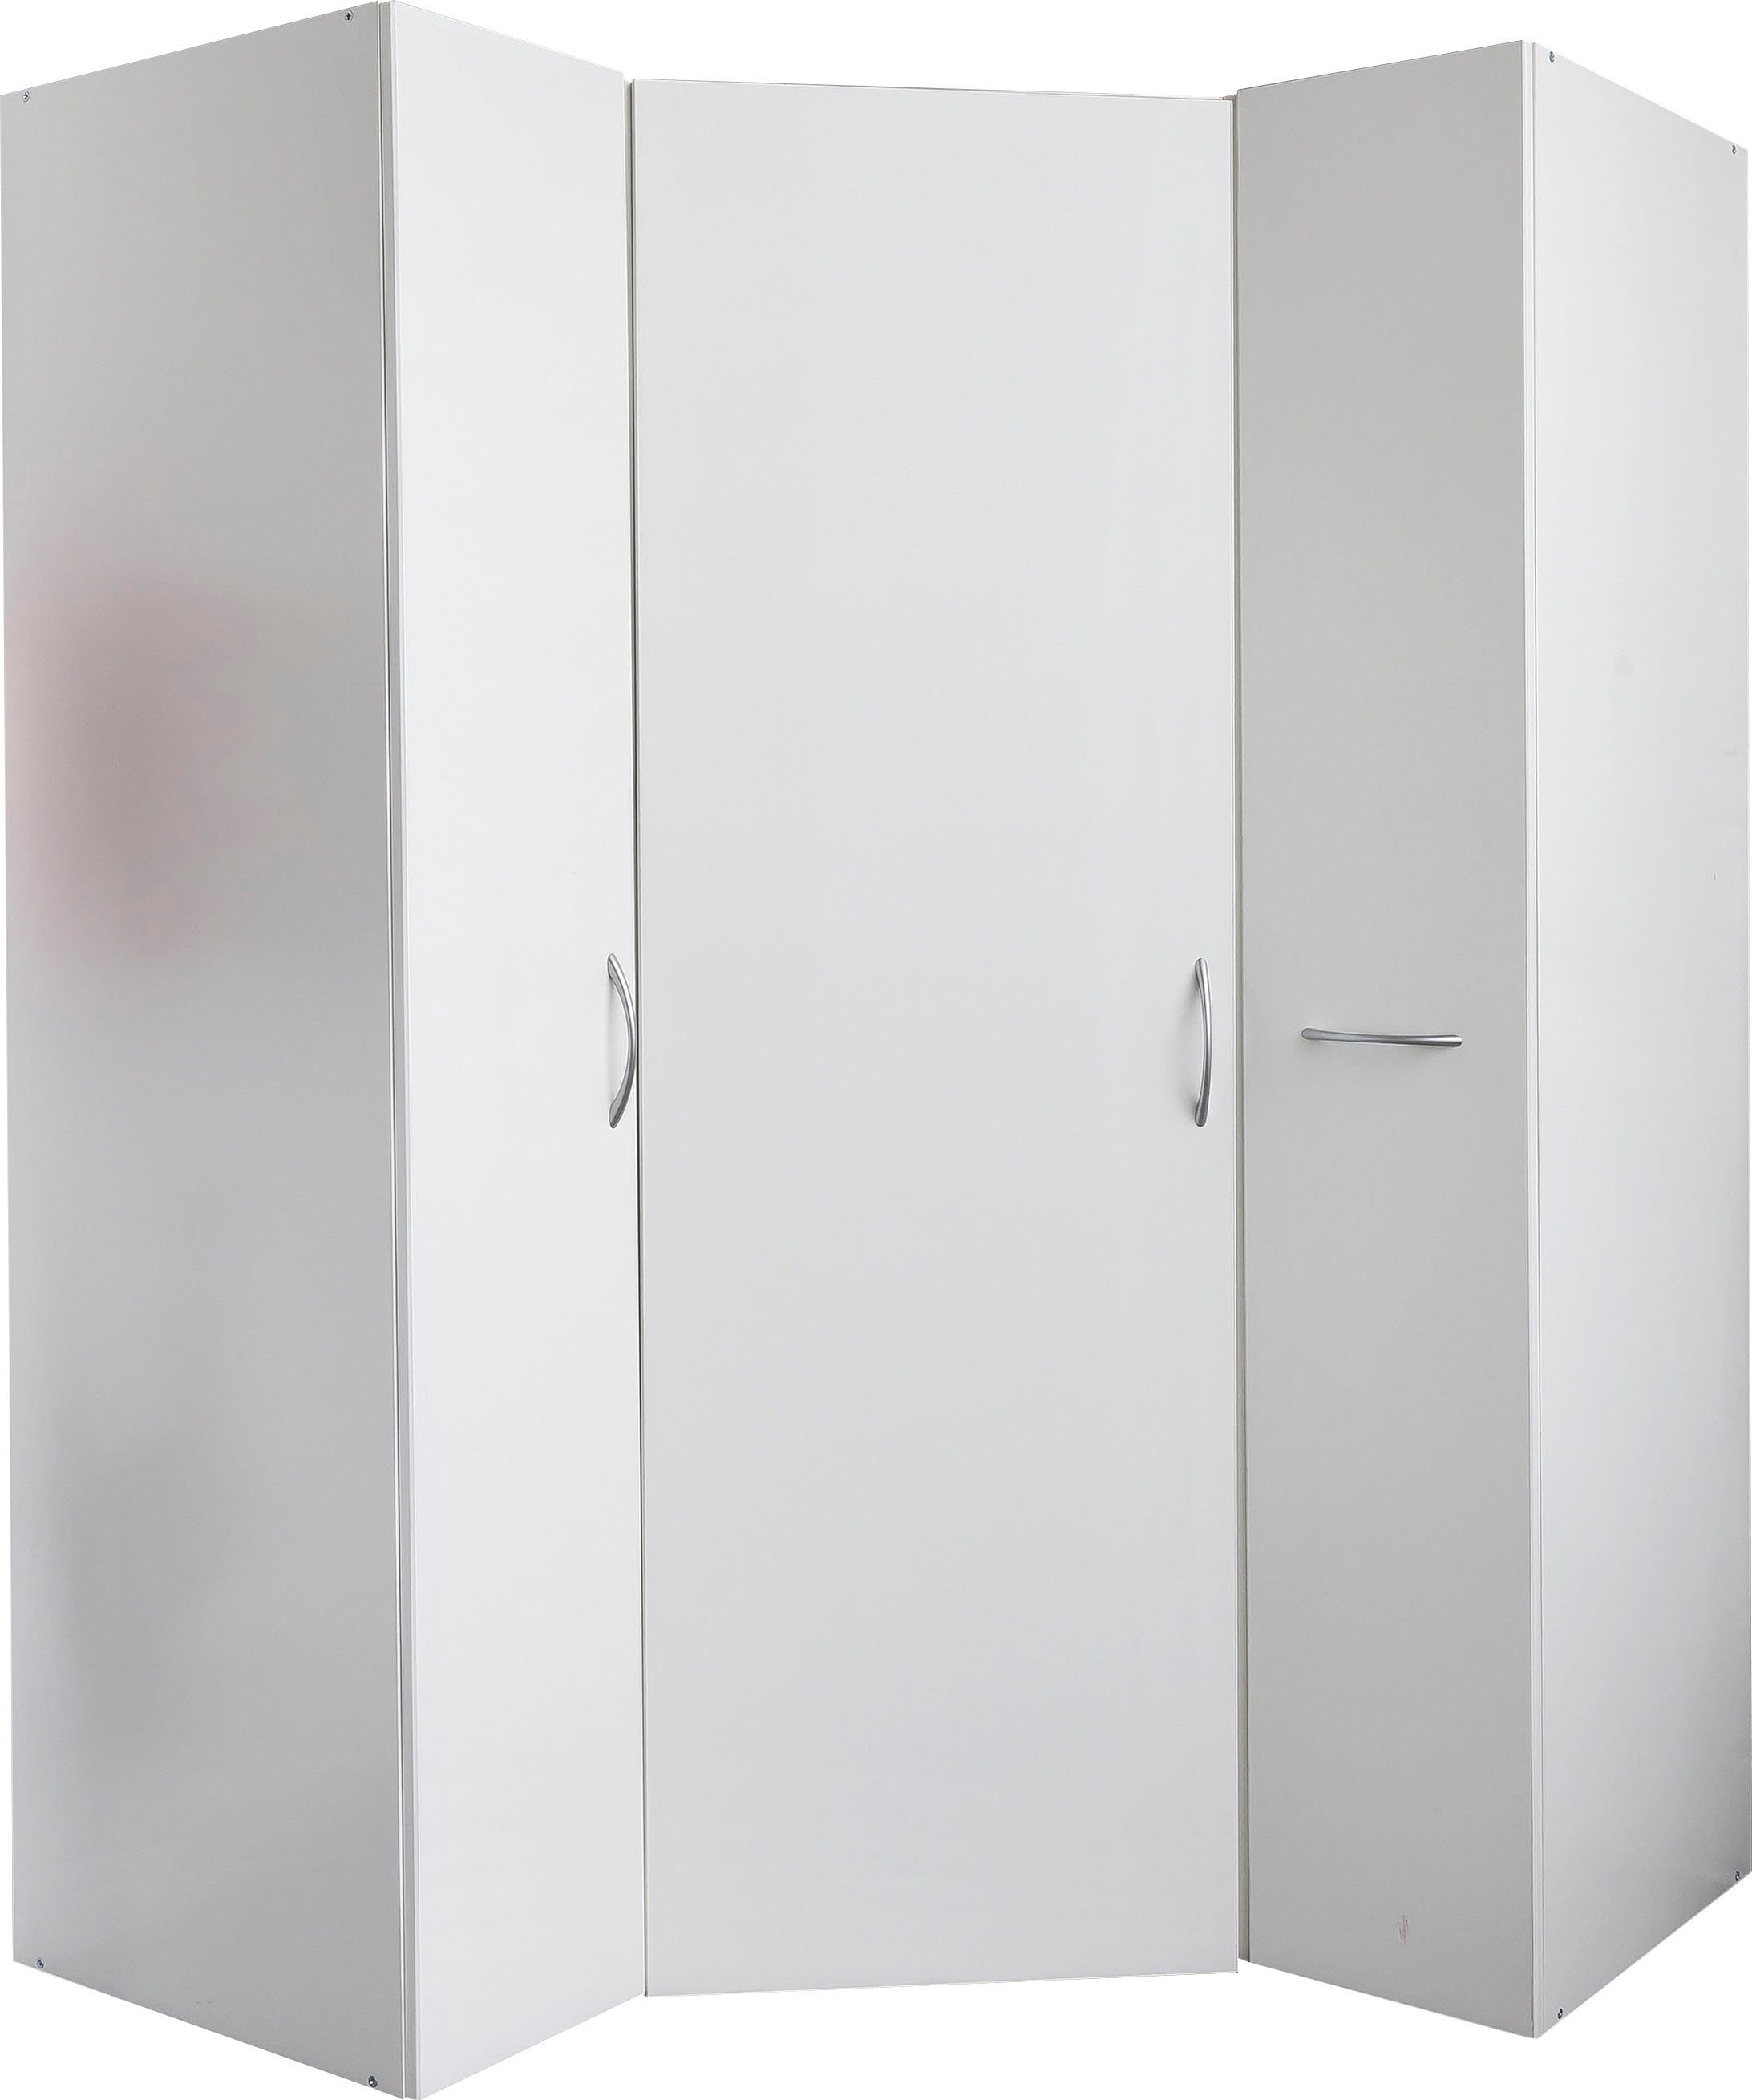 Wimex Eckschrank Multiraumkonzept mit offenen Rückwänden, Breite 95 cm Weiß | Weiß | Eckkleiderschränke